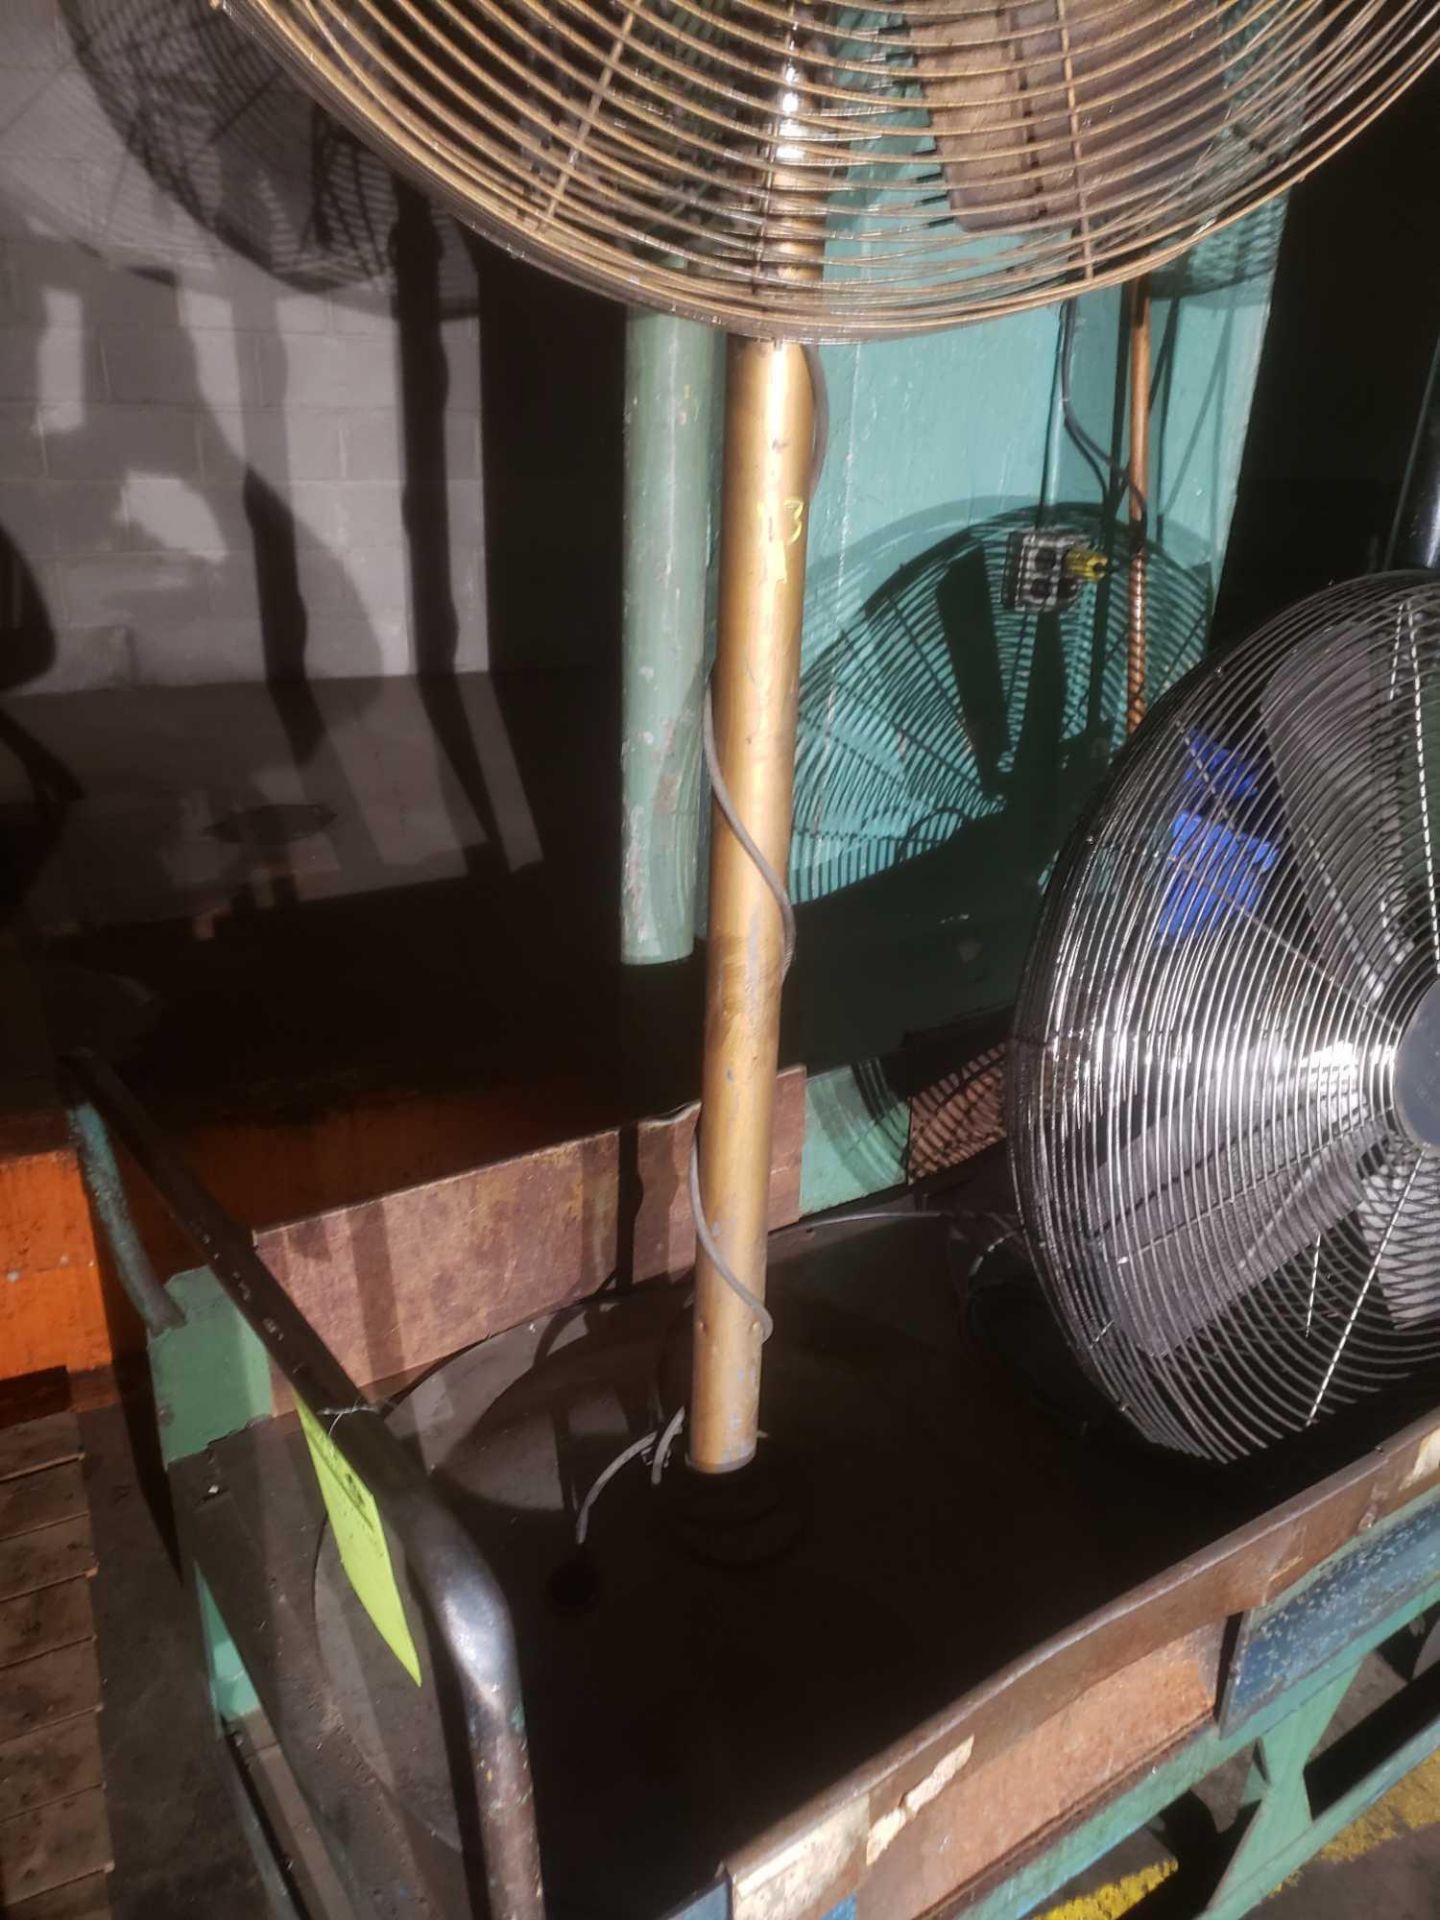 Patton 30 inch Shop Fan - Image 2 of 2